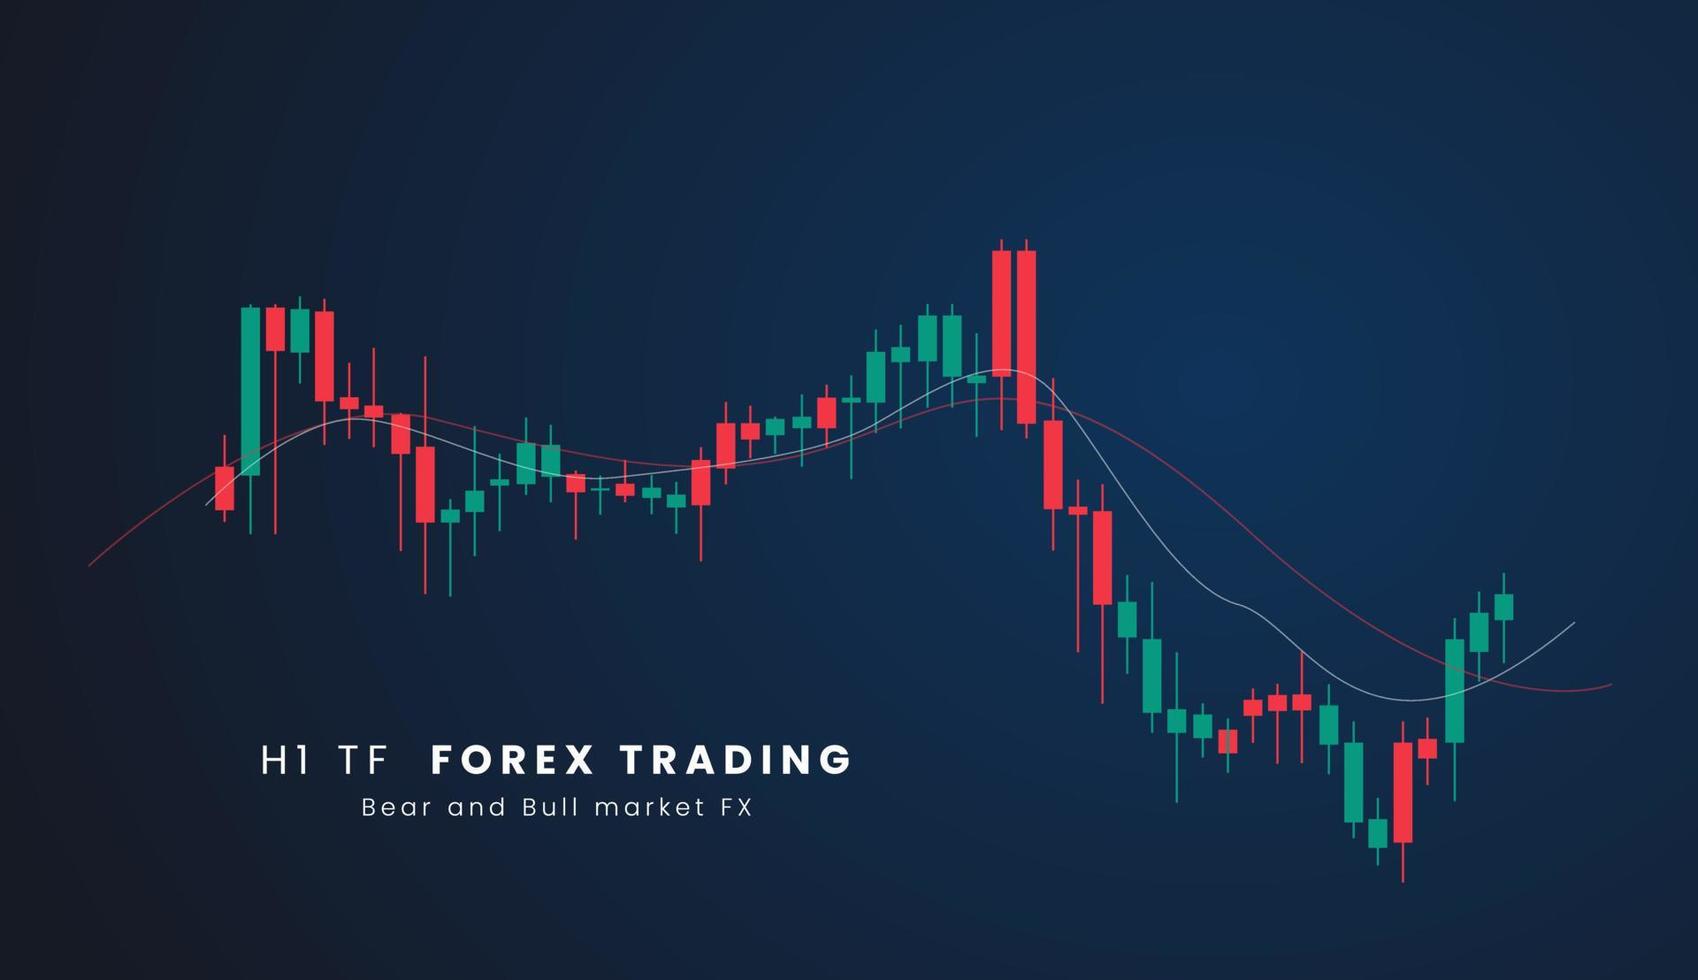 h1 tf valores mercado o forex comercio candelero grafico en gráfico diseño para financiero inversión concepto vector